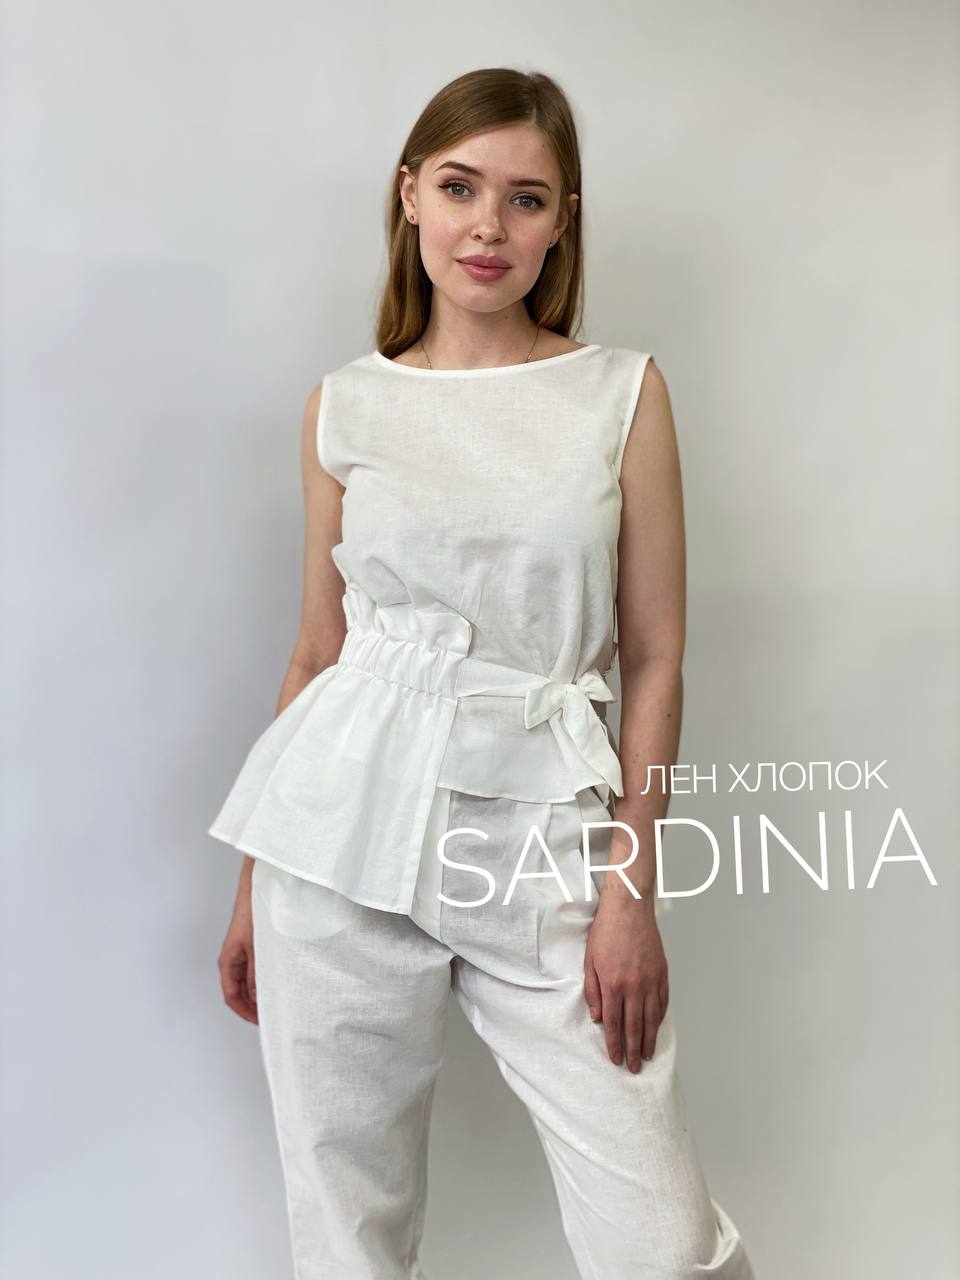 SARDINIA photo_2023-02-06_21-13-59